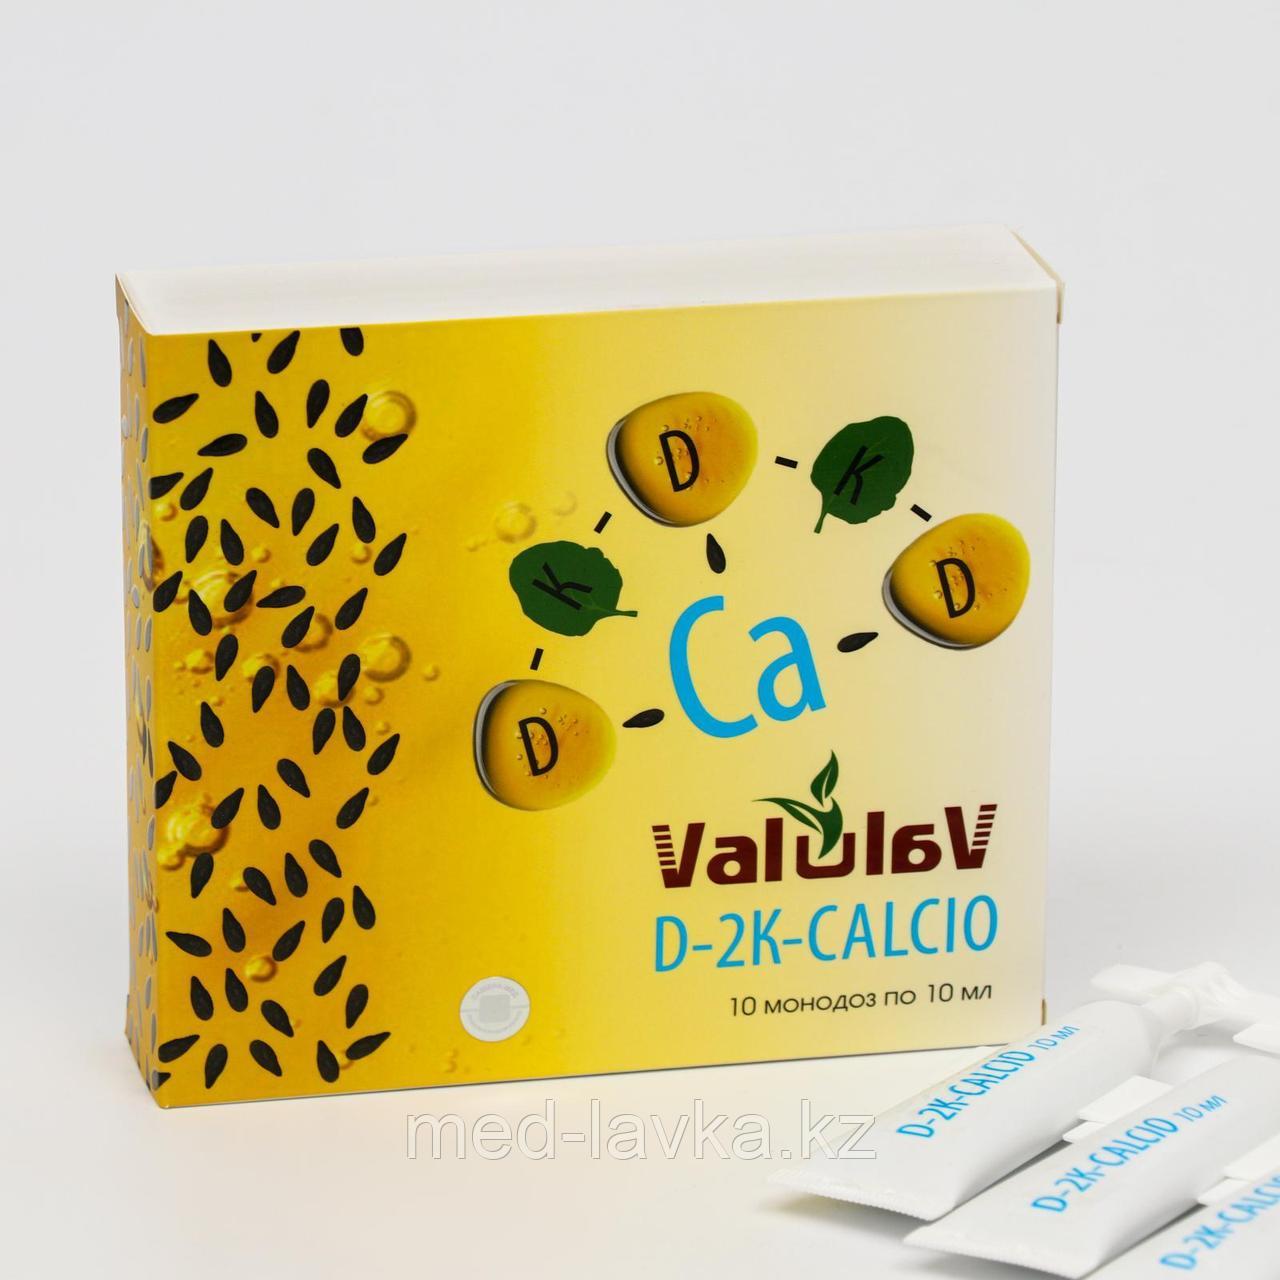 Монодозы ValuLav D-2K-CALCIO источник витаминов D3, K1, K3 и кальция, 10 шт. по 10 мл